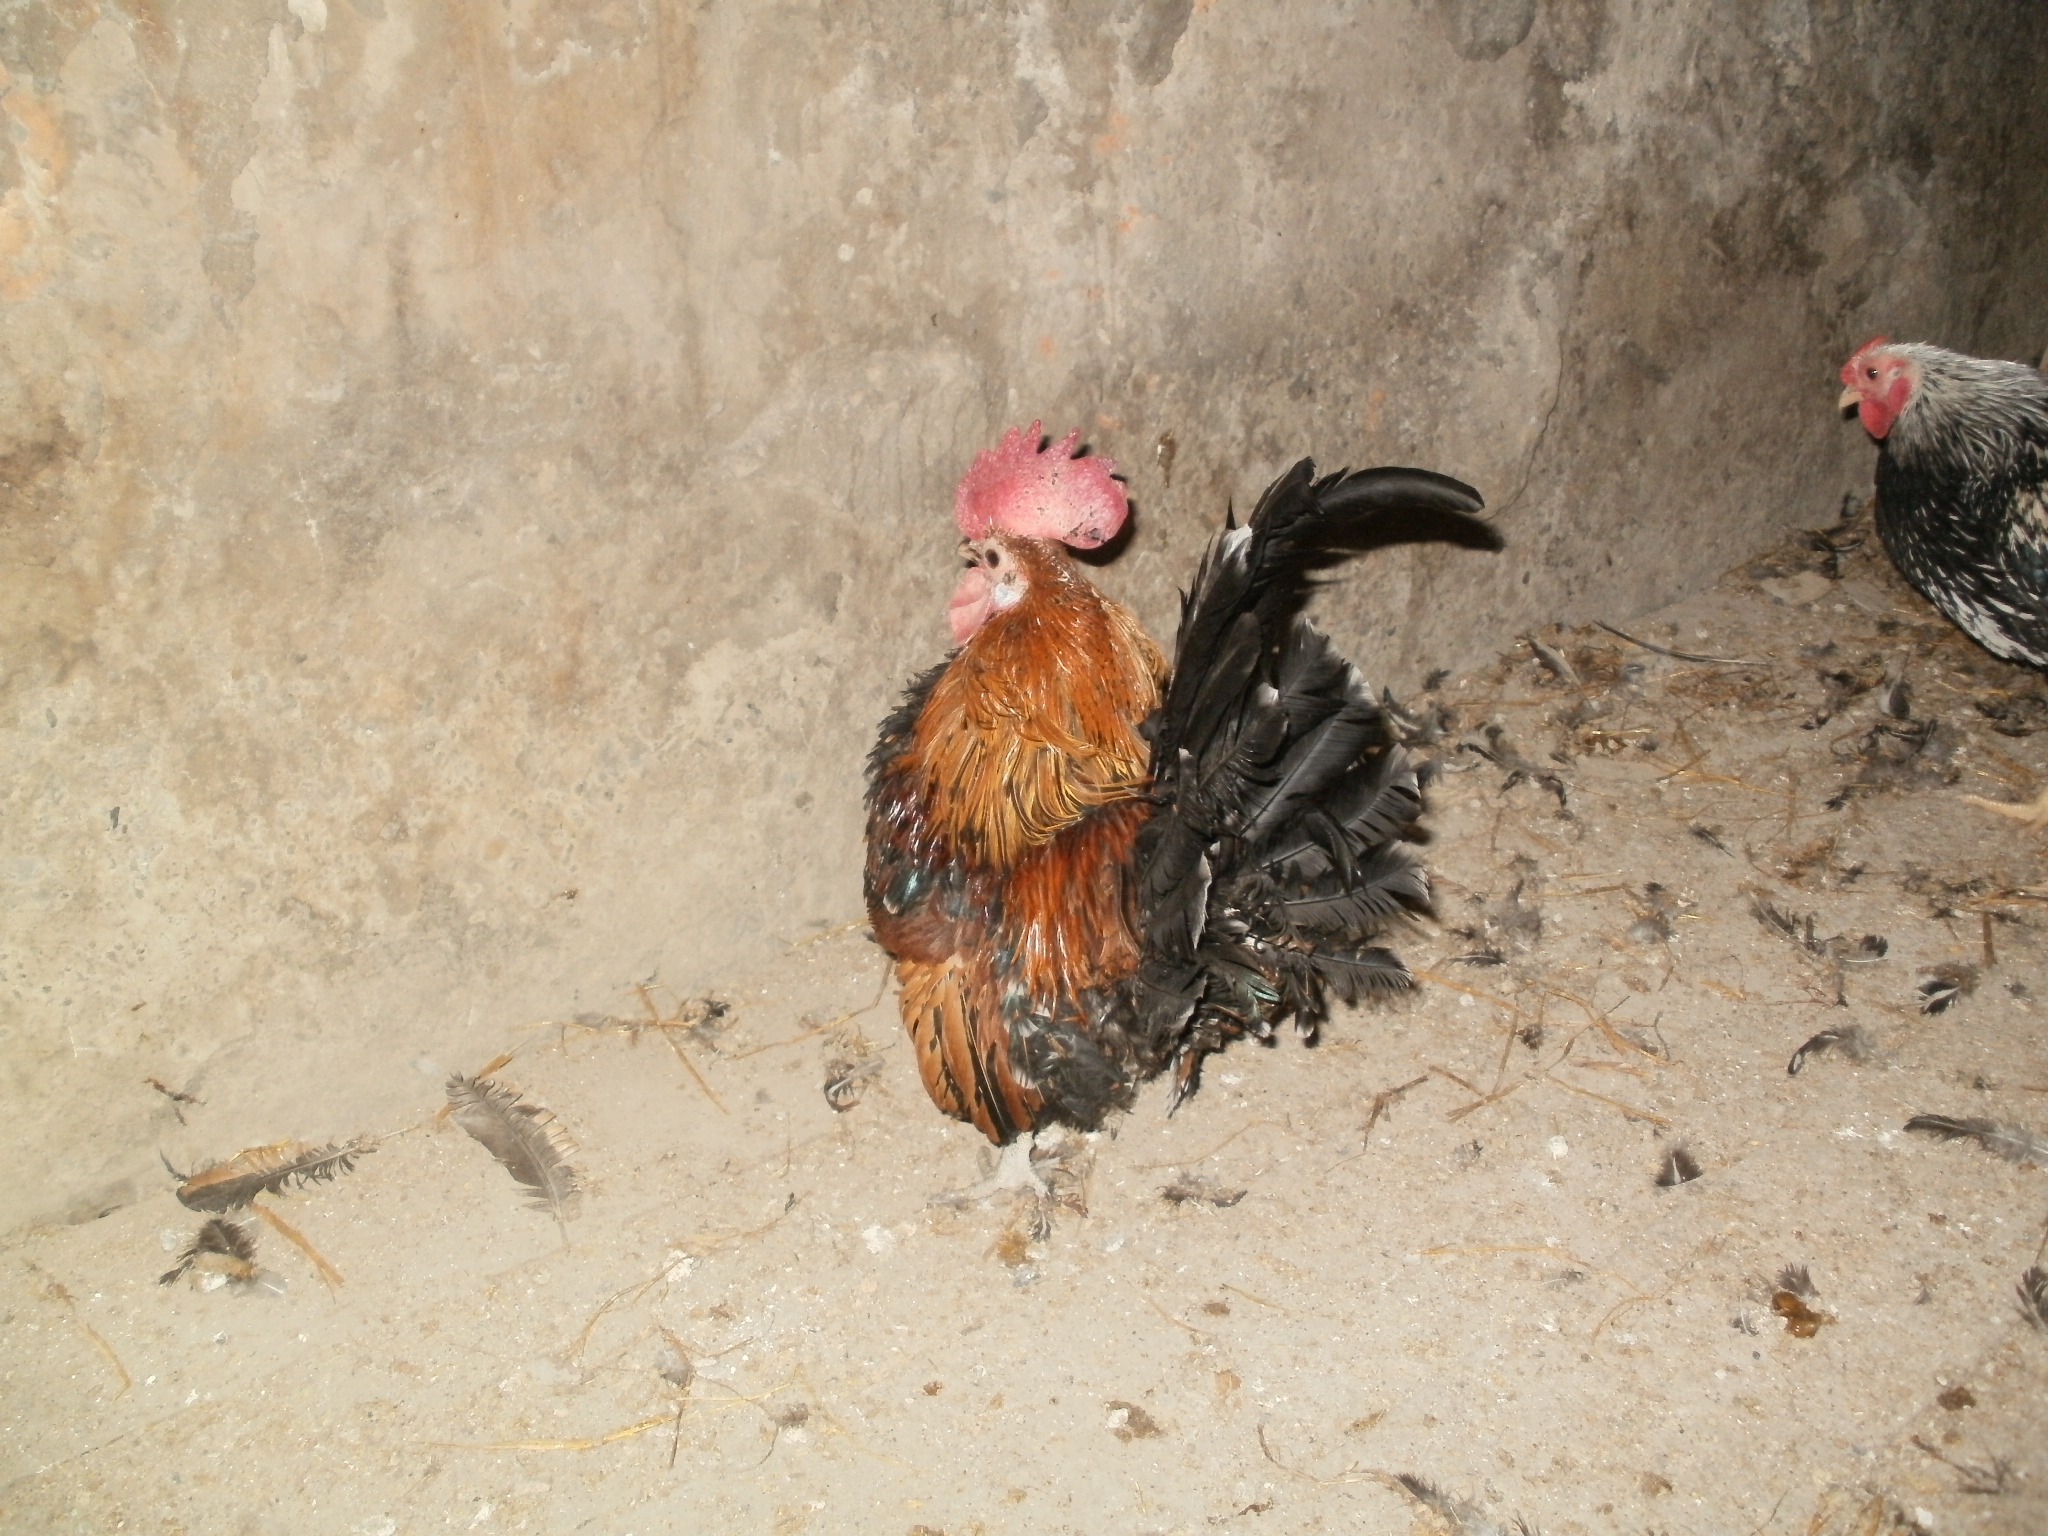 Денизли порода кур – описание с фото и видео